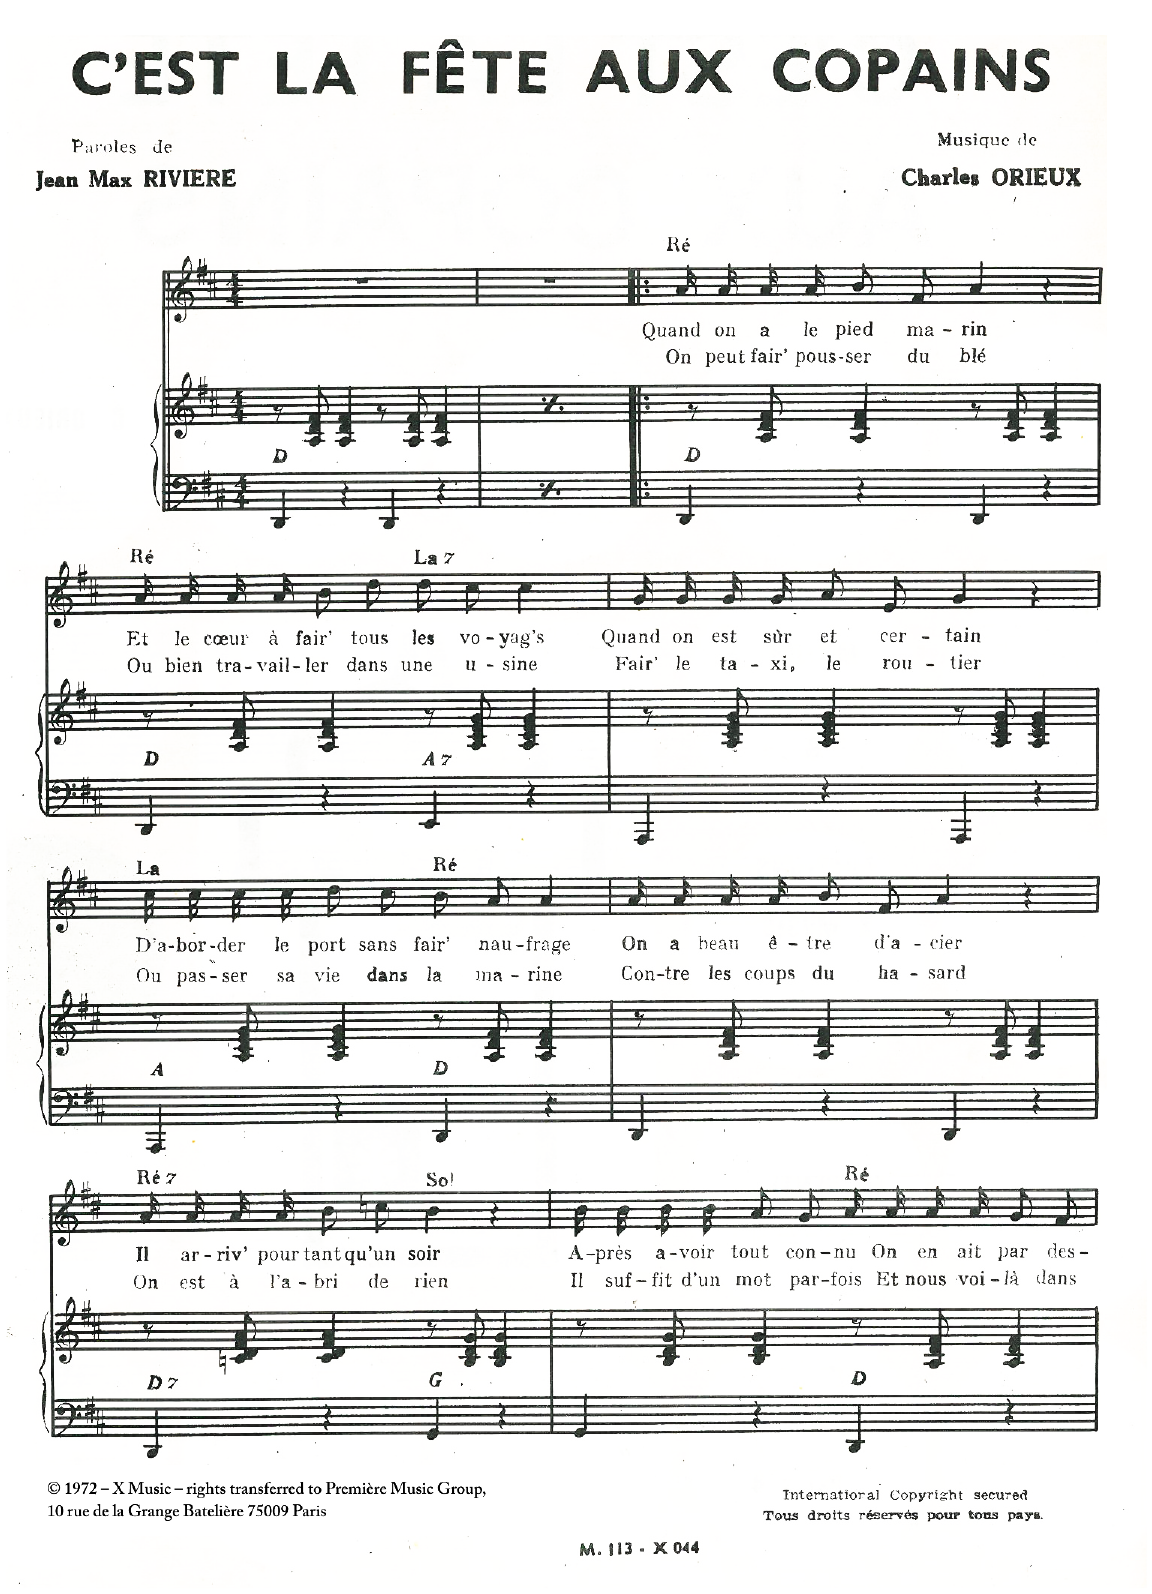 Jean-Max Riviere C'est La Fete Aux Copains Sheet Music Notes & Chords for Piano & Vocal - Download or Print PDF